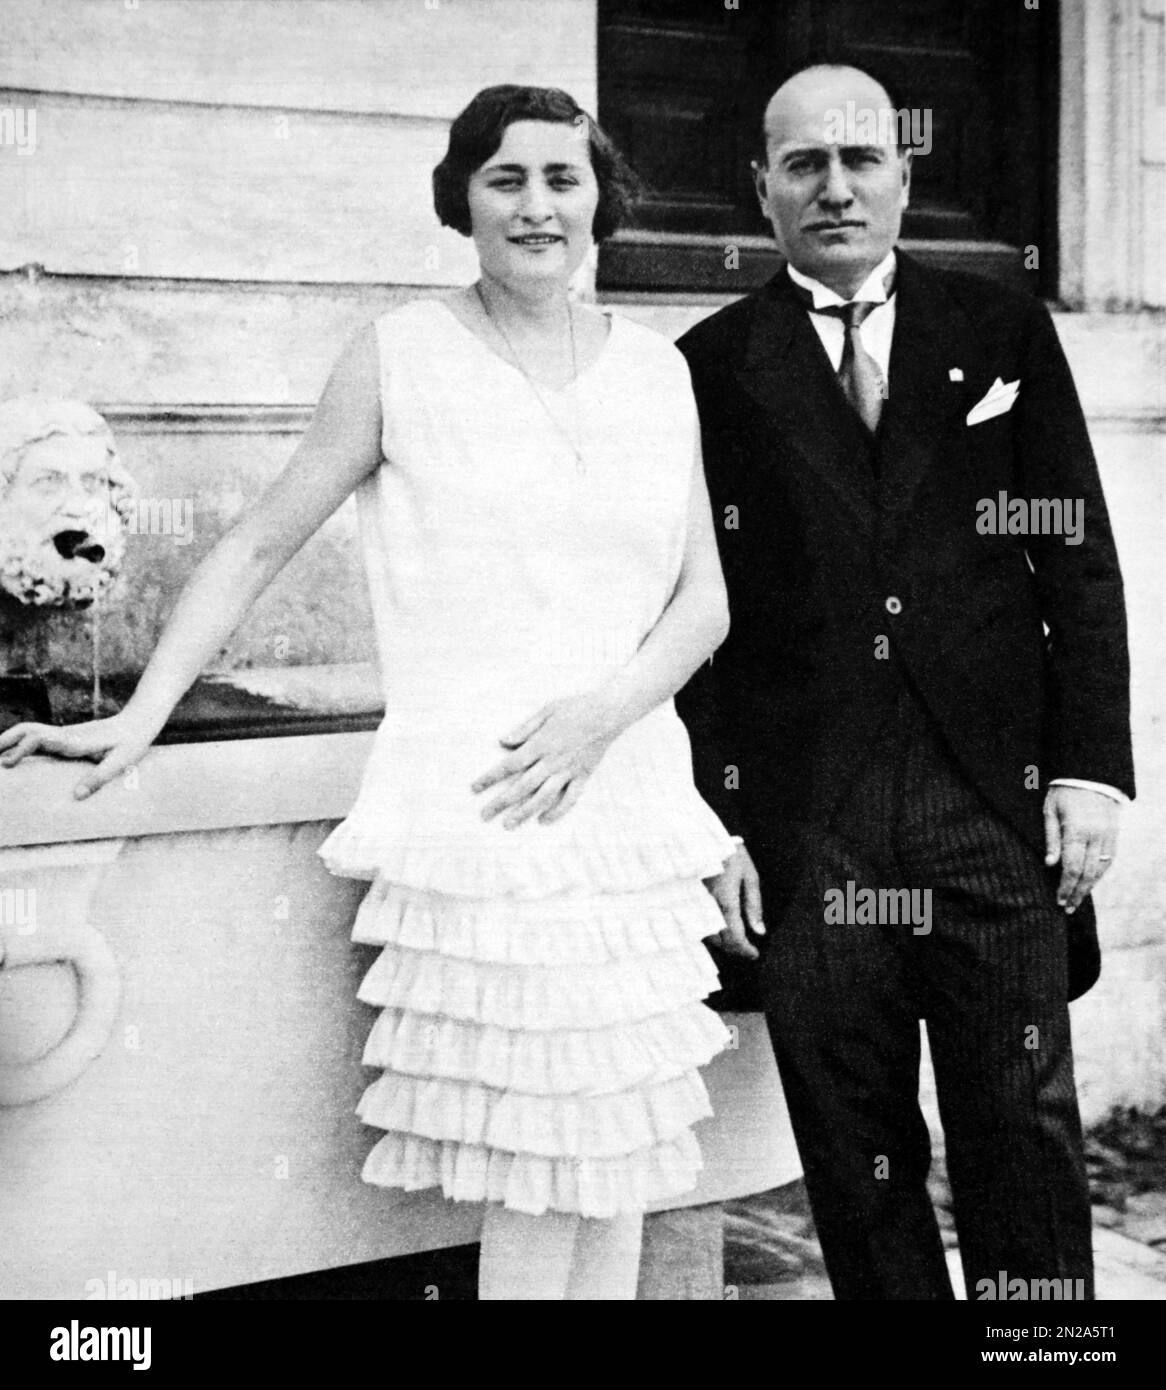 1928 CA , ROME , ITALIE : EDDA MUSSOLINI ( 1910 - 1995 ) avec le père du dictateur fasciste italien Duce Benito MUSSOLINI ( 1883 - 1945 ) à Villa Torlonia . Le jour du 24 avril 1930 Edda a épousé le comte Galeazzo CIANO ( 1903 - 1944 ) . Photographe inconnu. - HISTOIRE - FOTO STORICHE - PORTRAIT - RITRATTO - CONTESSA - comtesse - nobili - nobile - nobiltà italiana - noblesse italienne - portrait - ritratto - FASCISTA - FASCISTE - FASCISMO - FASCISME - aito vestito bianco - robe blanche - ROMA - ITALIA - padre e figlia - Père et fille --- Archivio GBB Banque D'Images